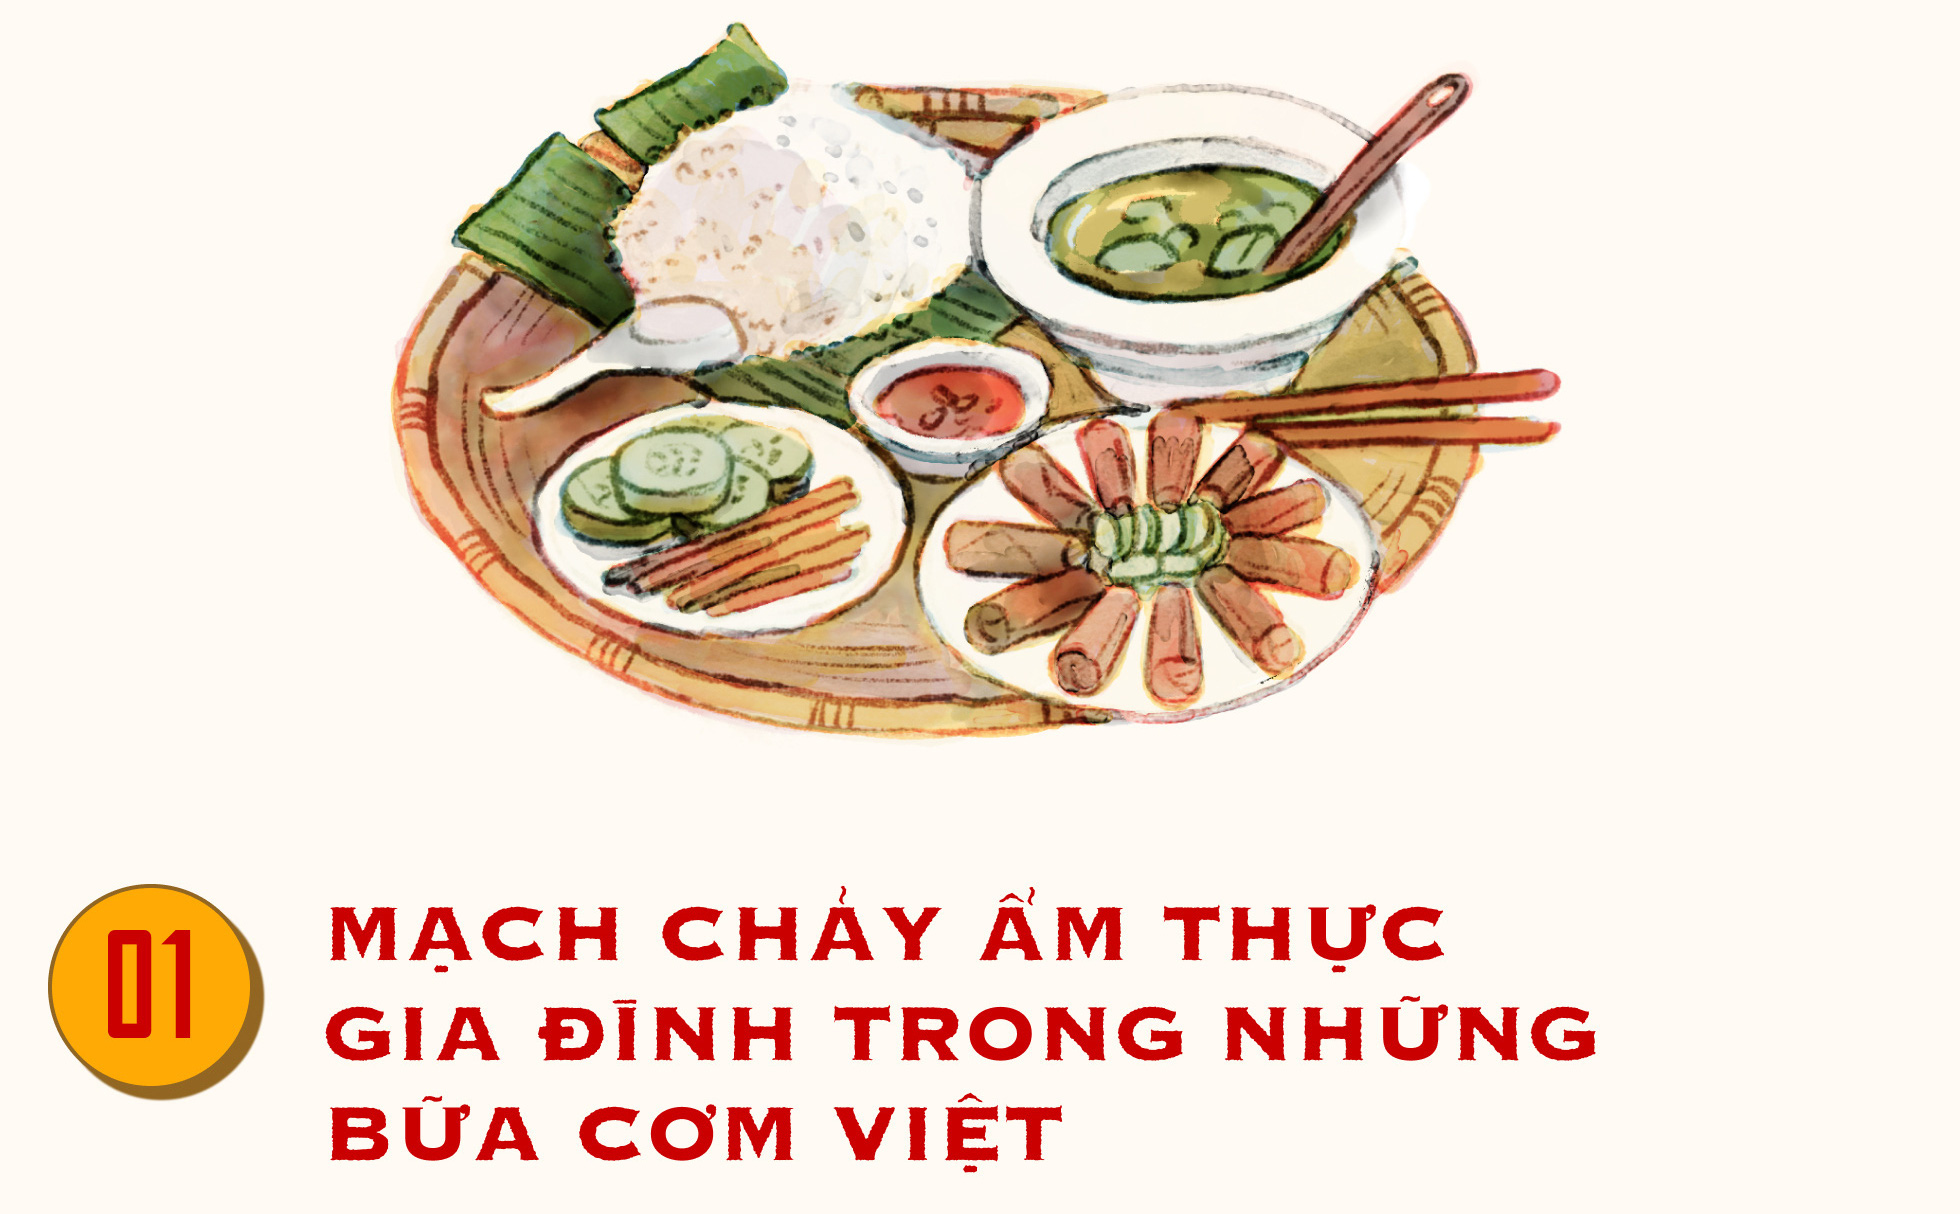 Nếp nhà trong những bữa cơm Việt truyền thống, ướp đậm tình cảm gia đình yêu thương - Ảnh 1.